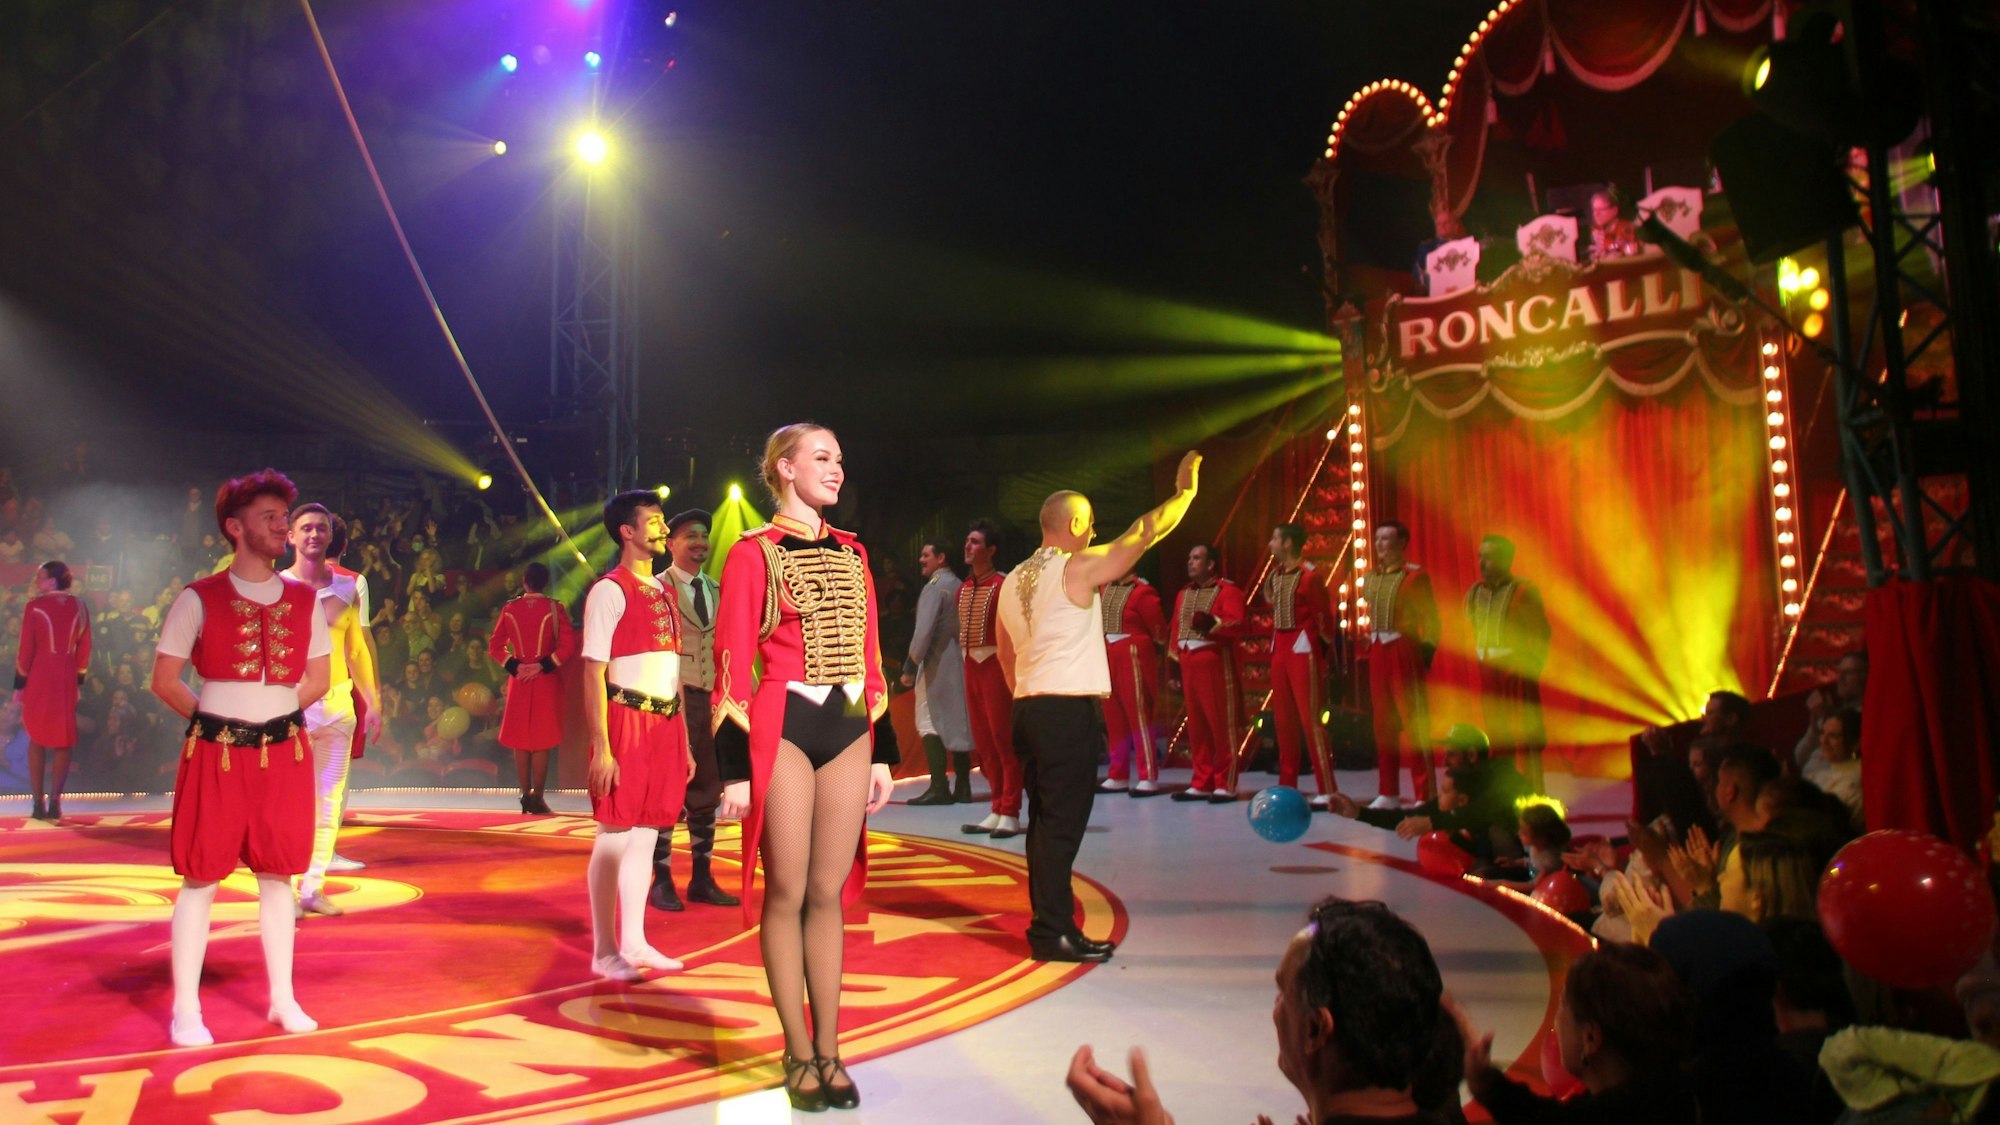 Blick in die Manege und auf das Ensemble des Circus Roncalli in New York.